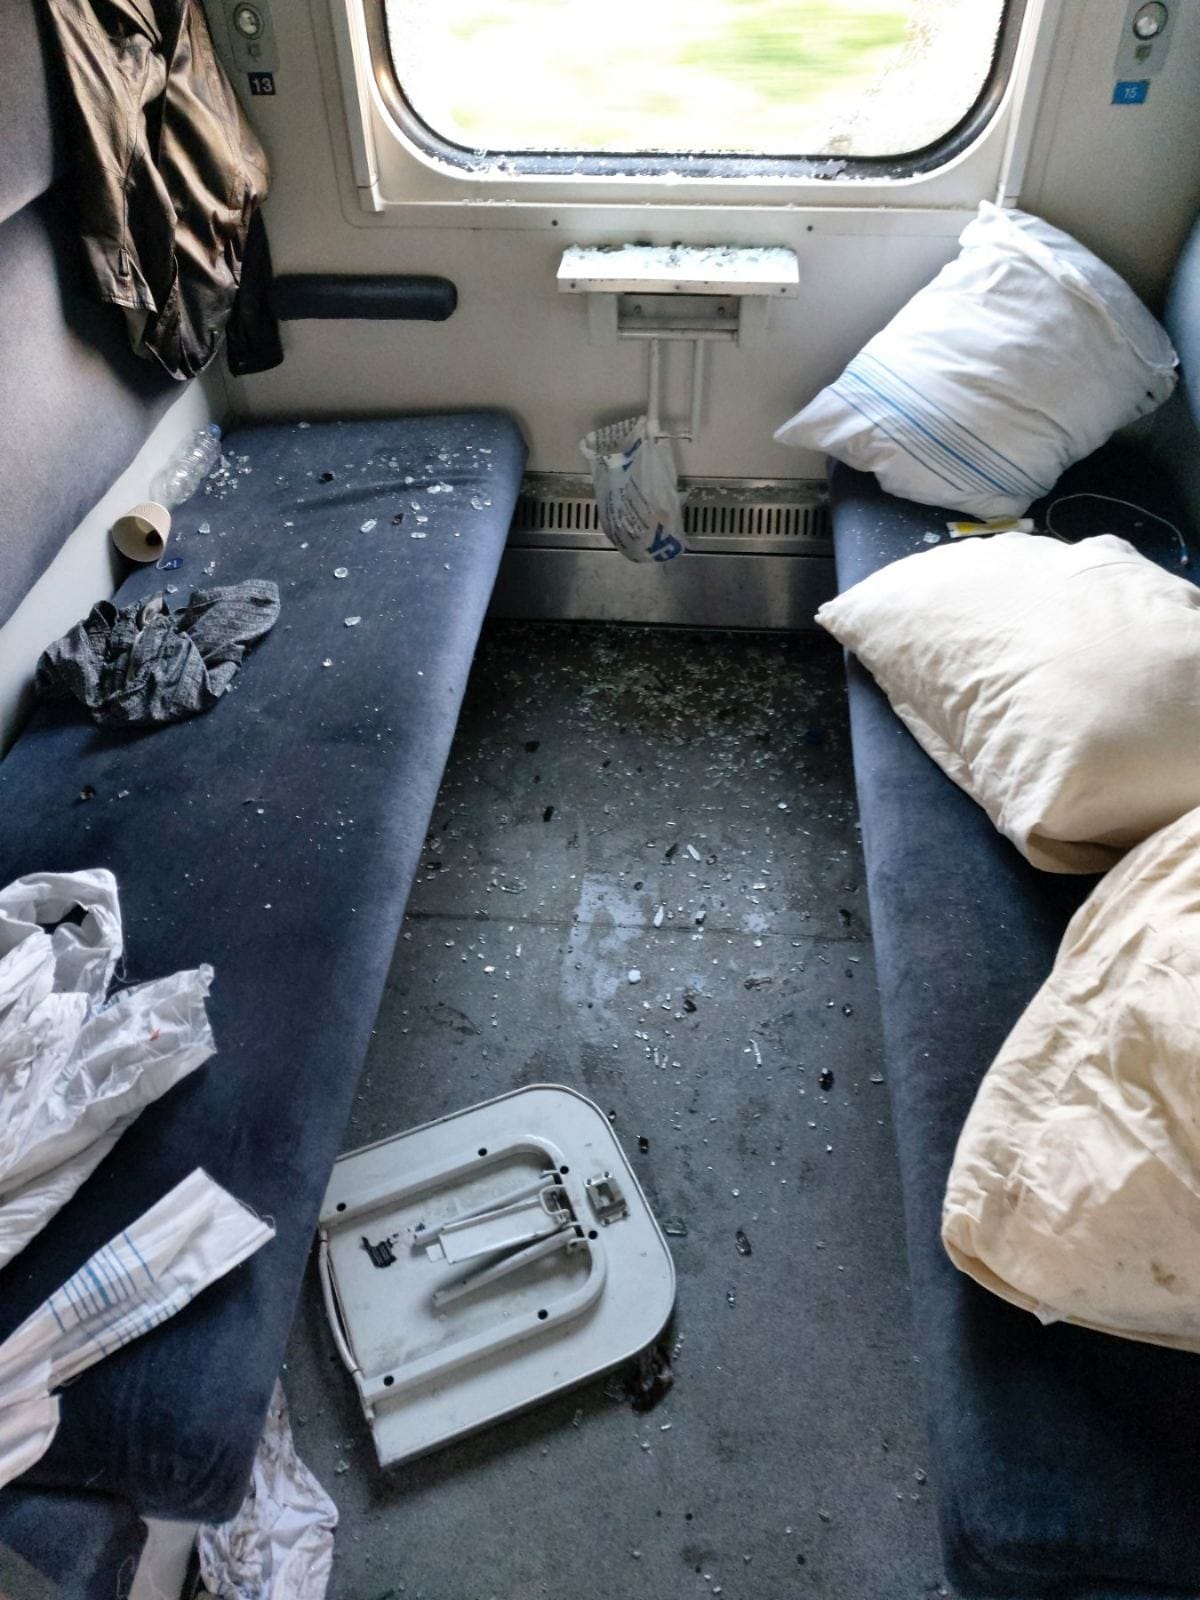  В поезде Киев-Трускавец пассажир разбил окно и стол, оставив после себя погром в купе. Фото